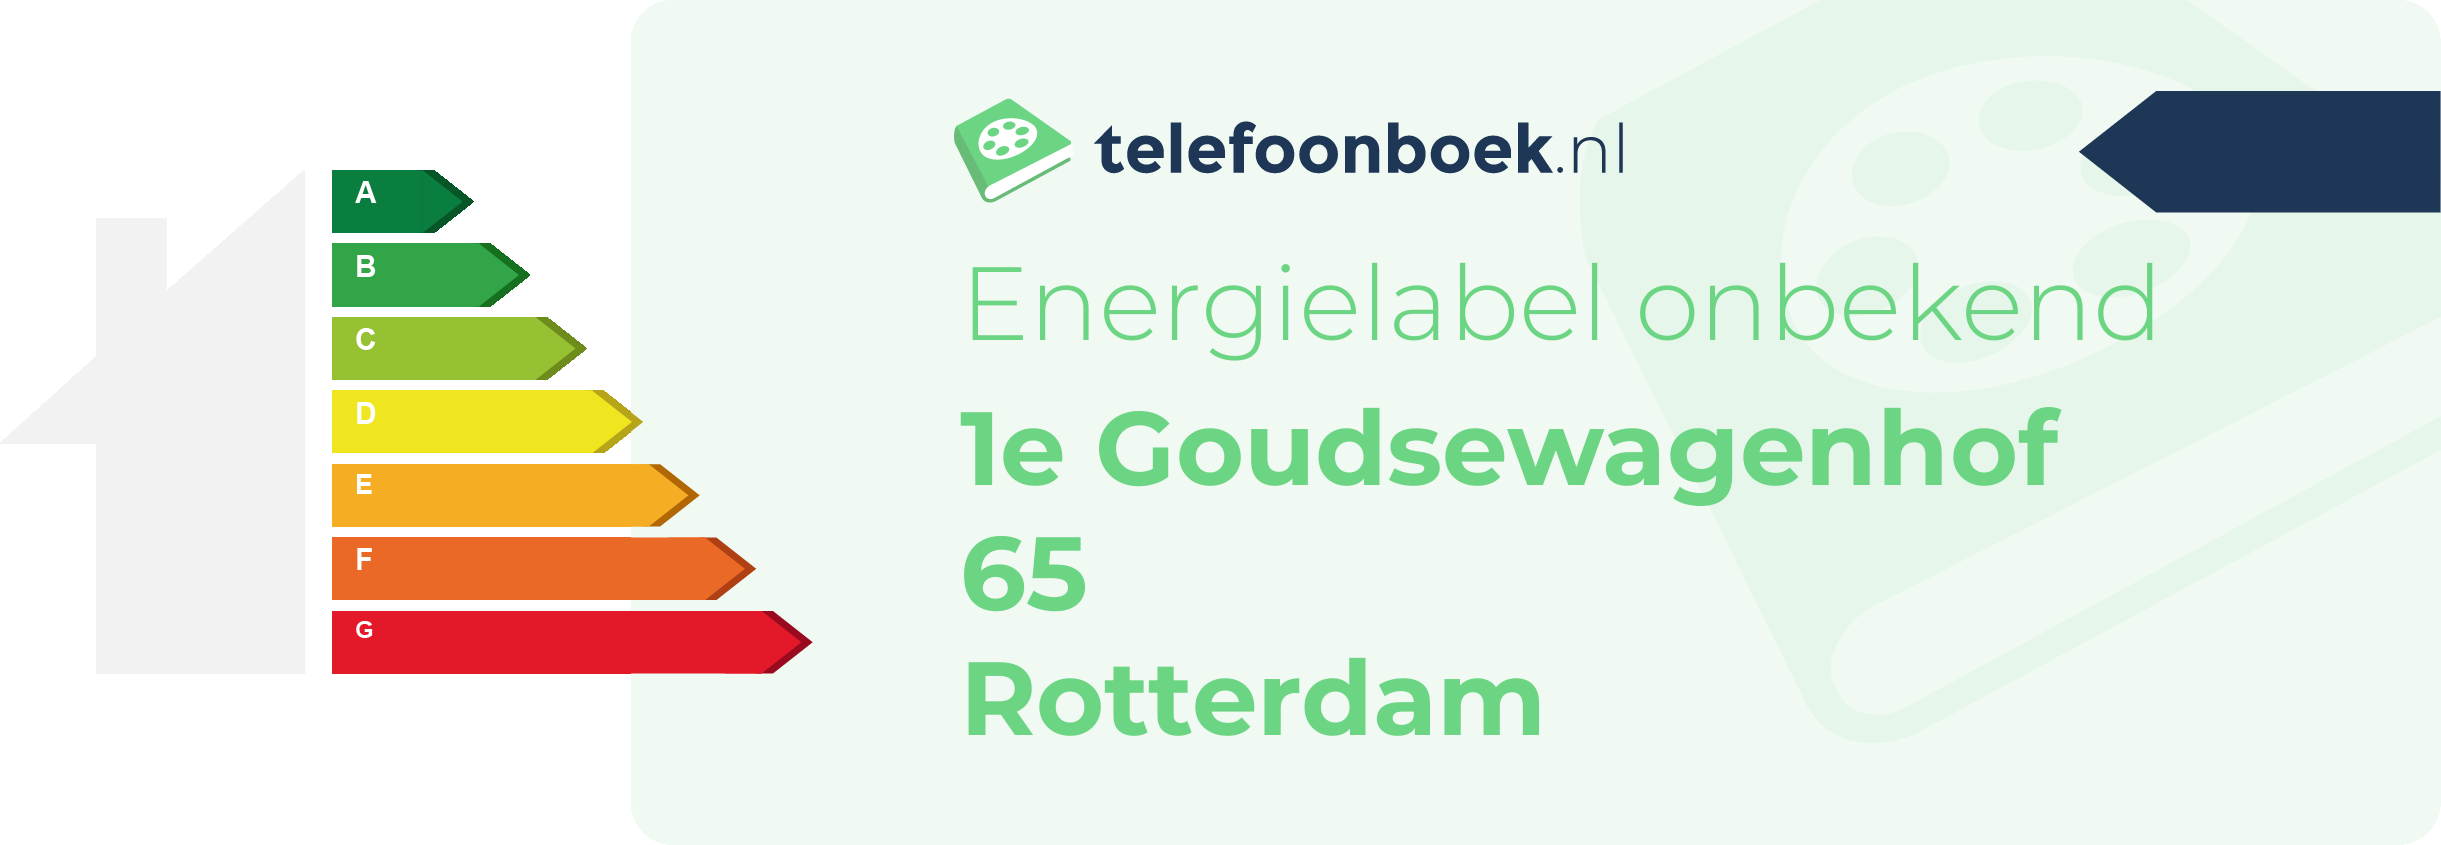 Energielabel 1e Goudsewagenhof 65 Rotterdam